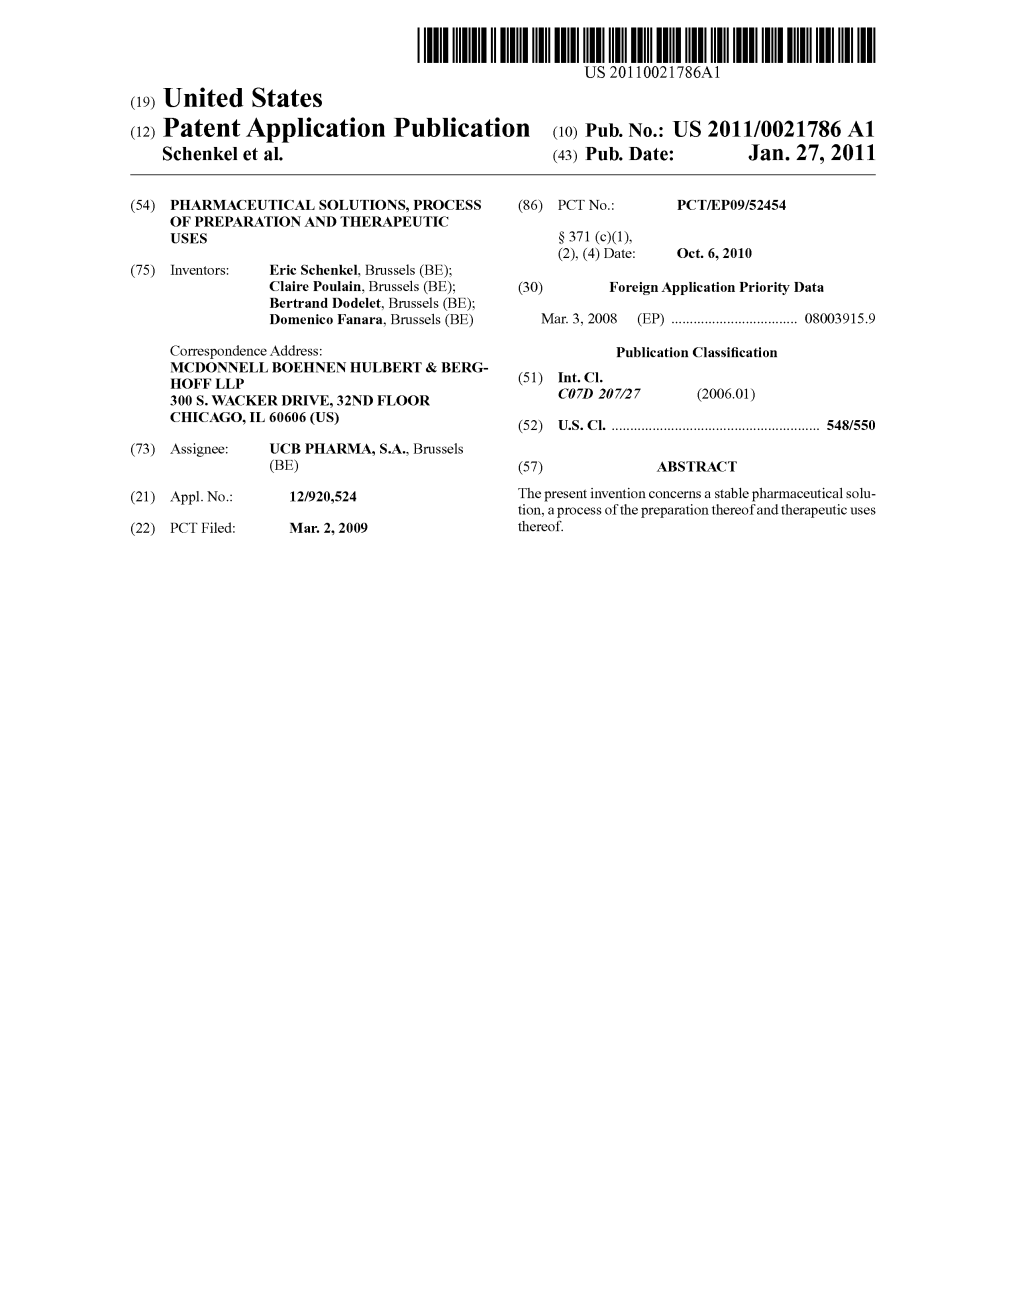 (12) Patent Application Publication (10) Pub. No.: US 2011/0021786 A1 Schenkel Et Al